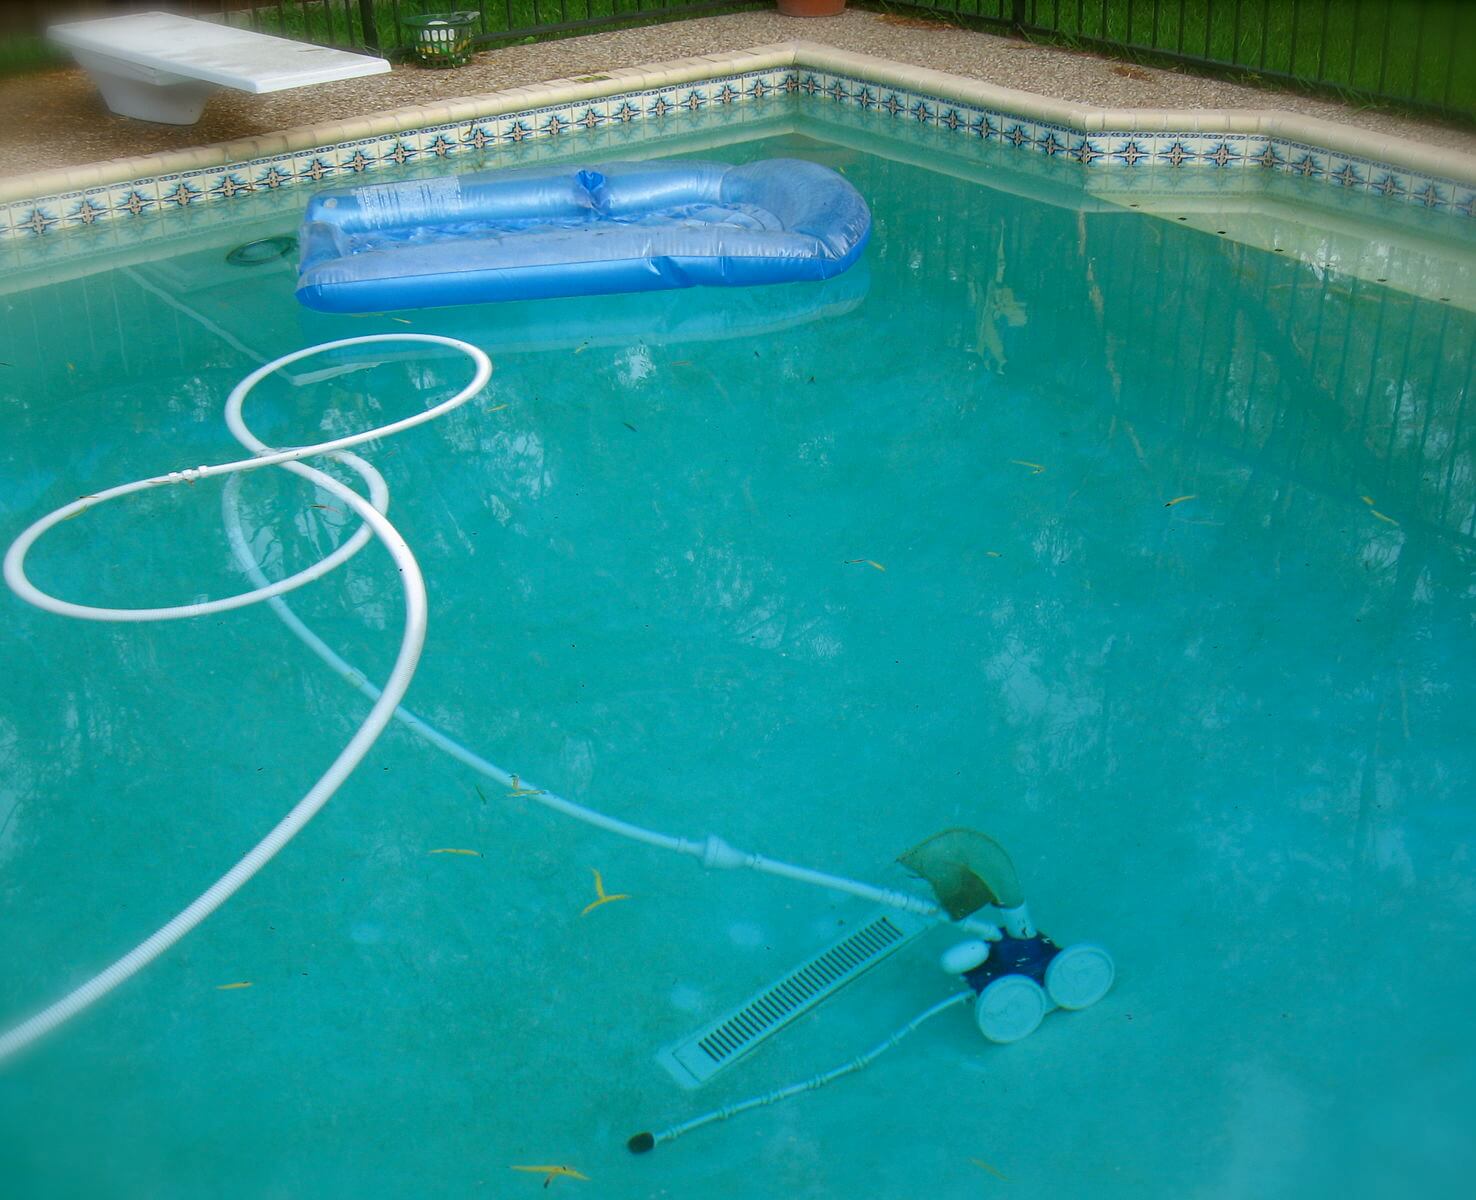 pool vacuum cleaner